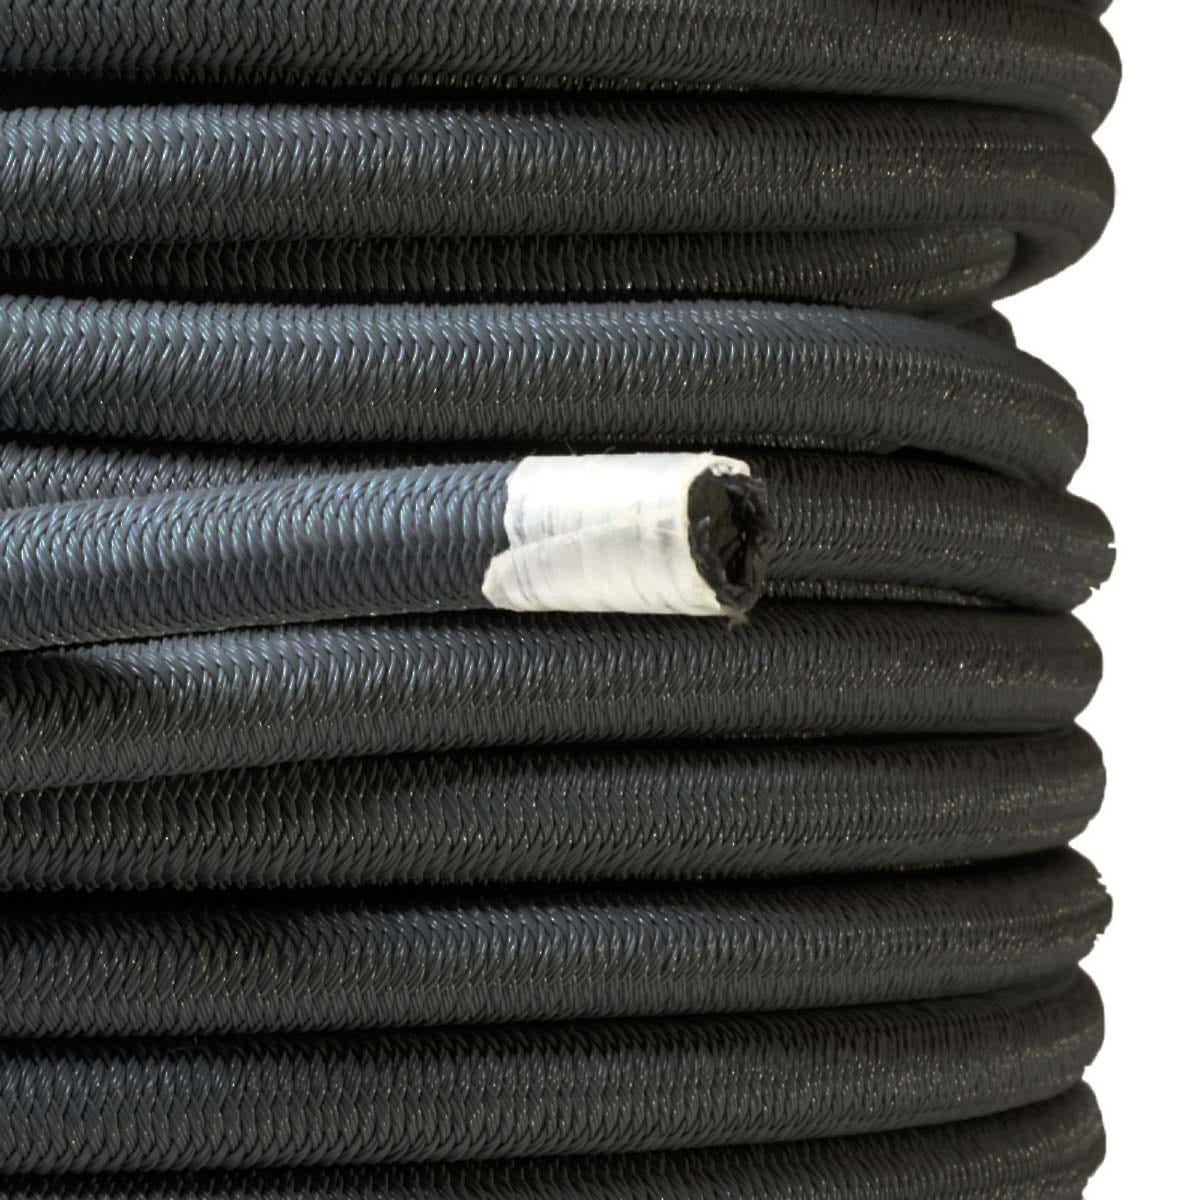 Sandow élastique Noir 25 mètres - Qualité PRO TECPLAST 9SW - Tendeur pour bâche de diamètre 9 mm 2